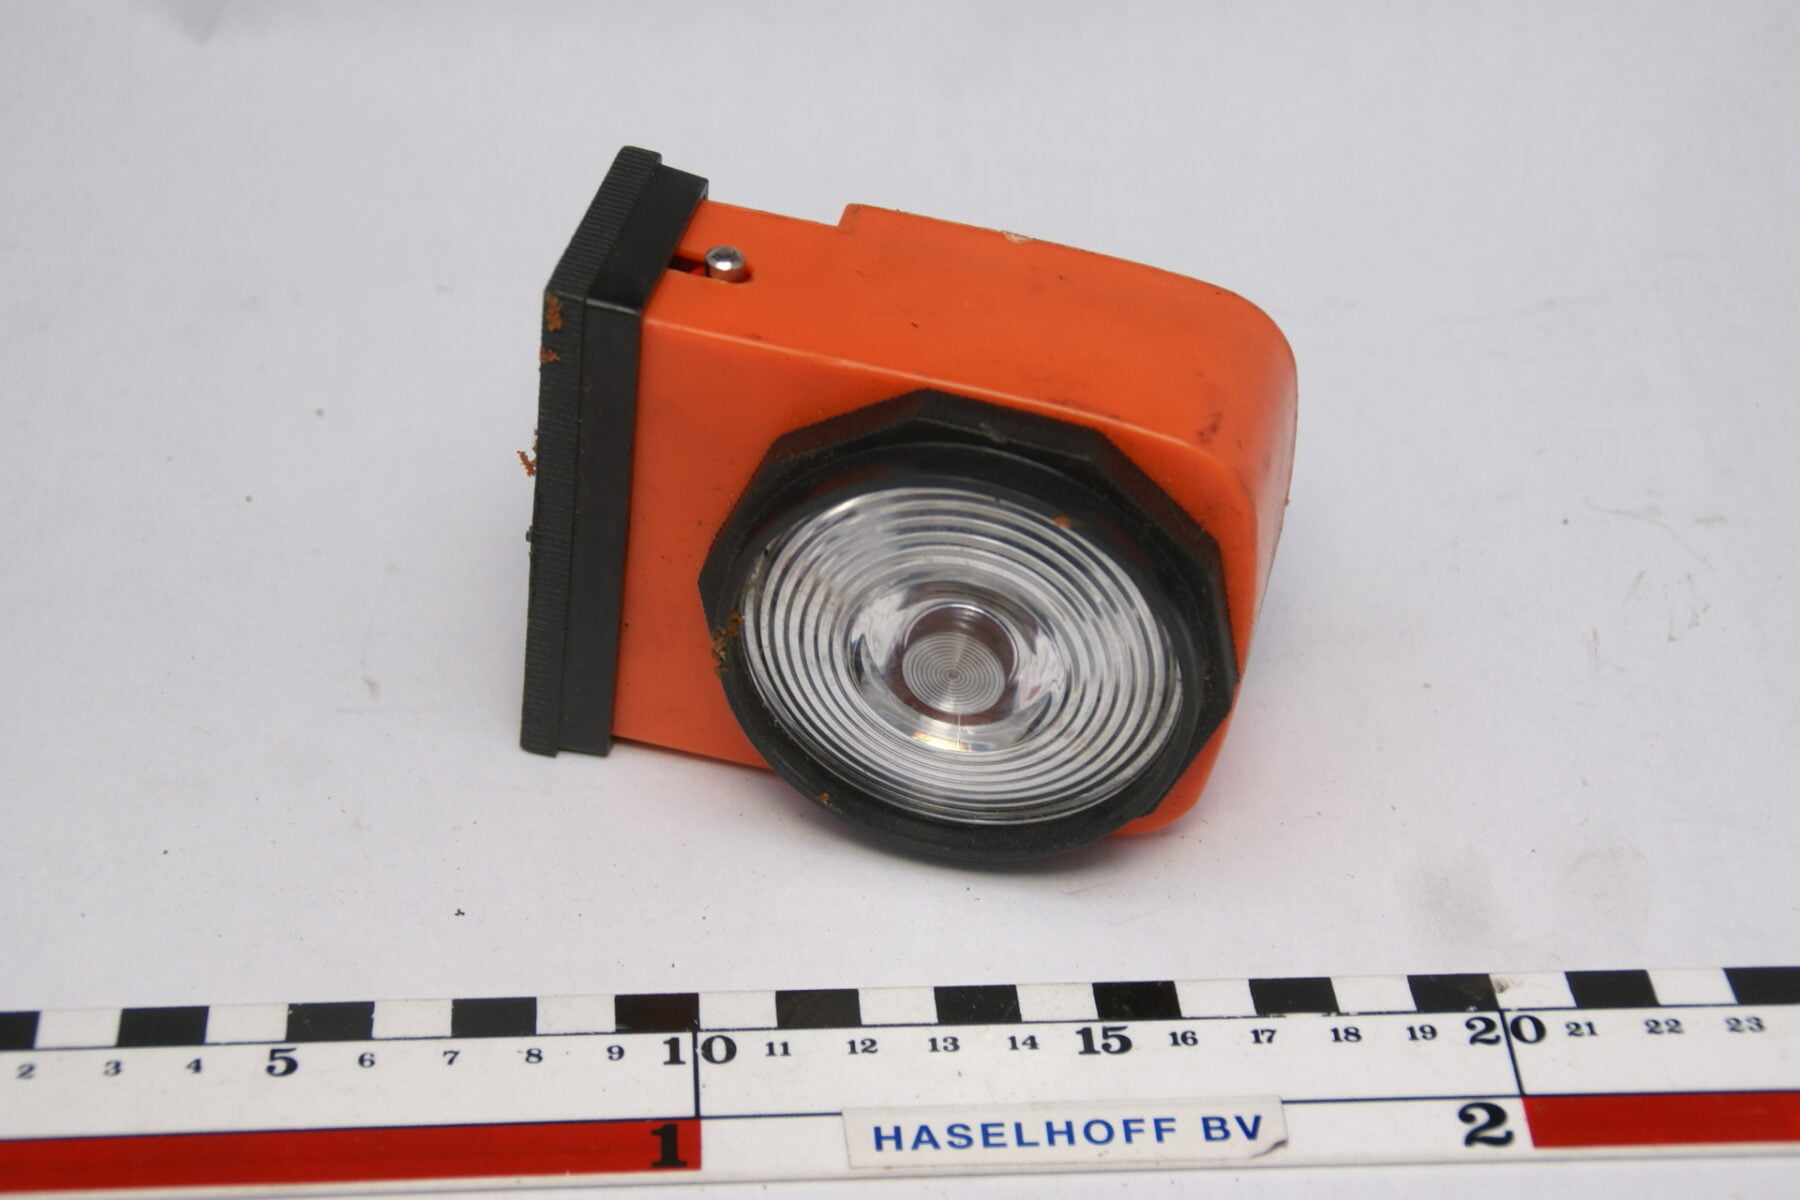 pechlamp 12V met oprolsnoer jaren 60 accessoires 160525-4716-0